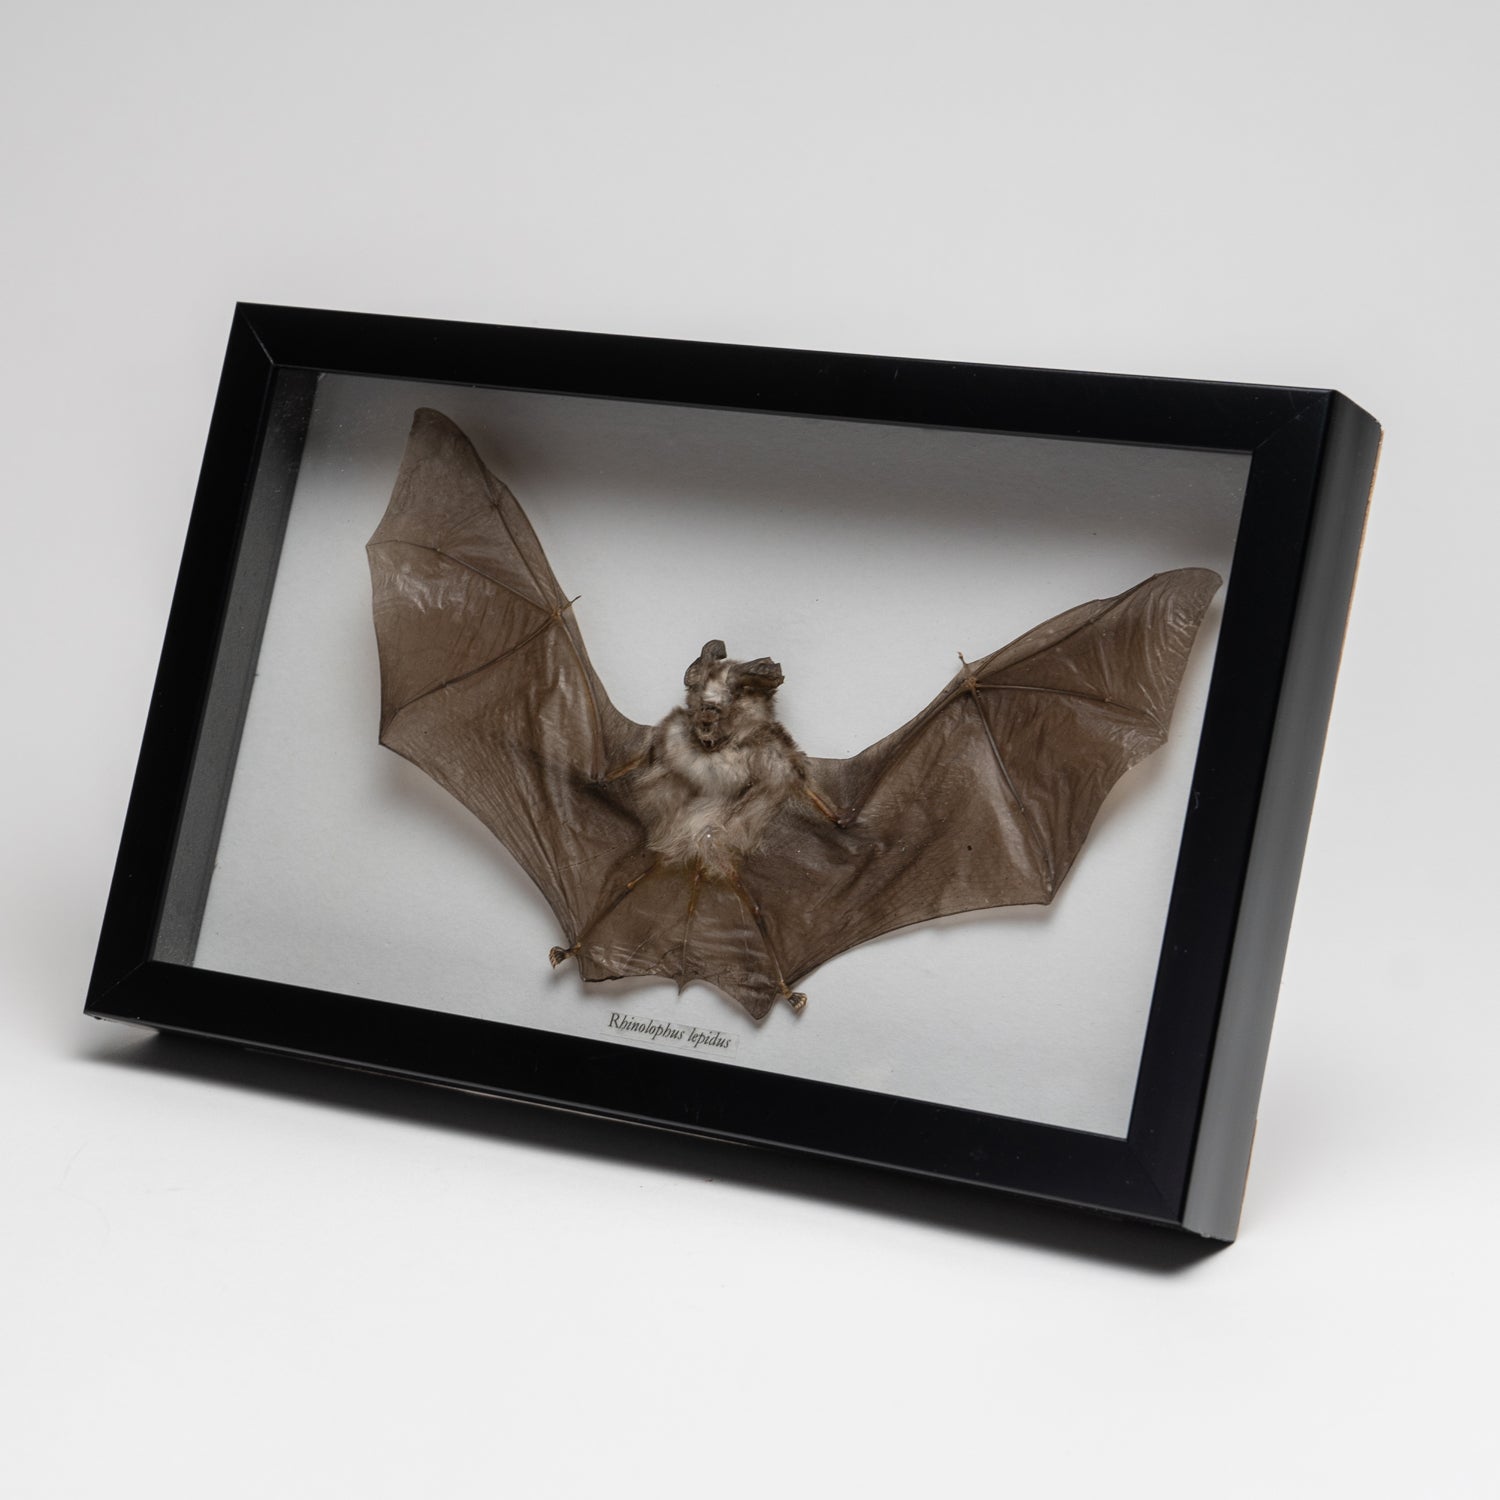 Genuine Rhinolphus Lepidus, The Horshoe Bat, in a Display Frame